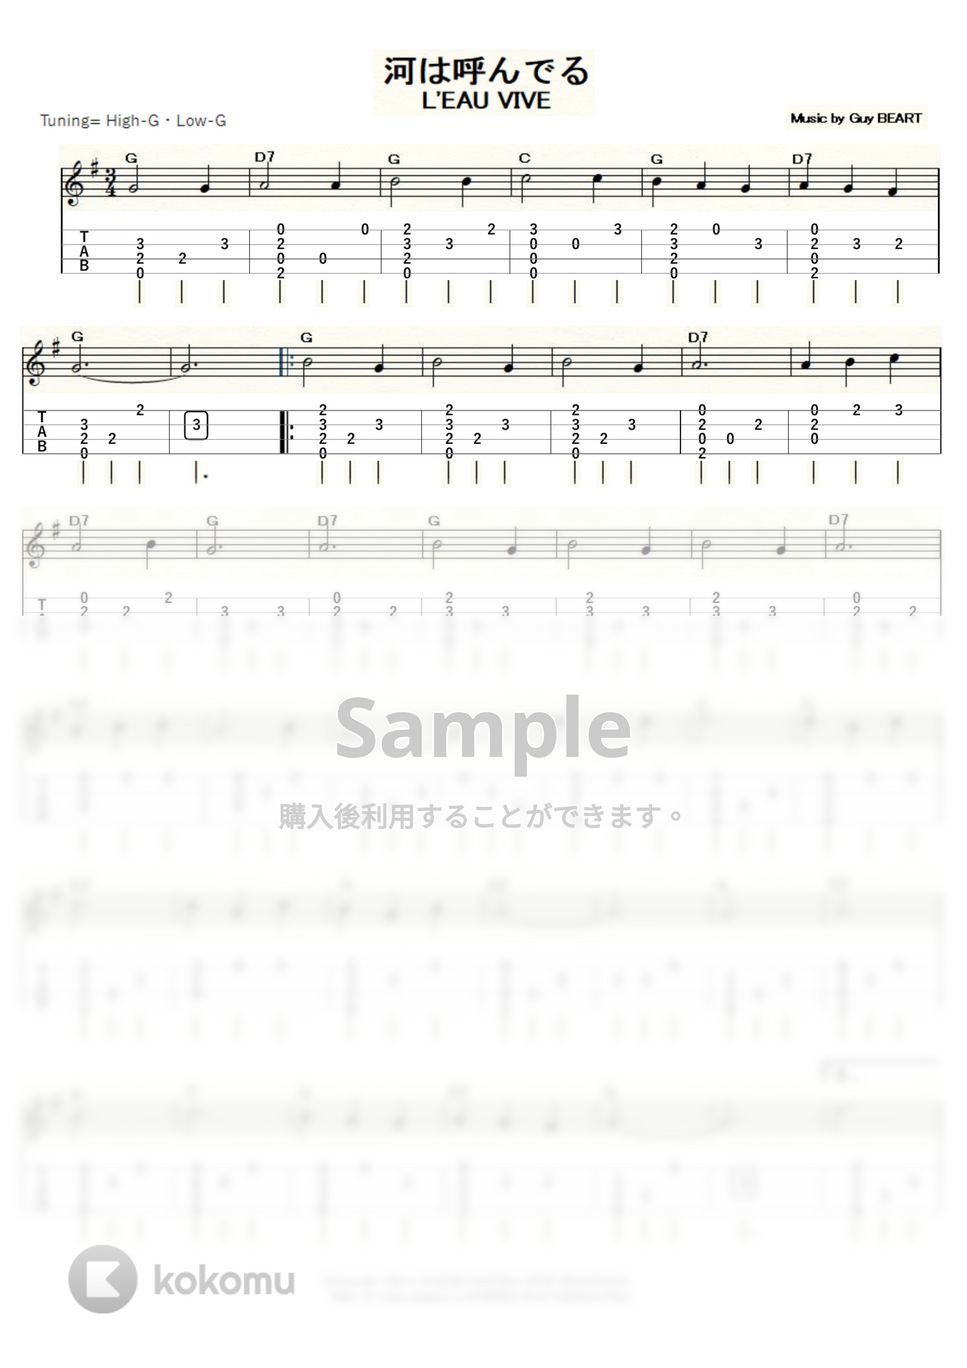 河は呼んでる - 河は呼んでる (ｳｸﾚﾚｿﾛ / High-G・Low-G / 中級) by ukulelepapa